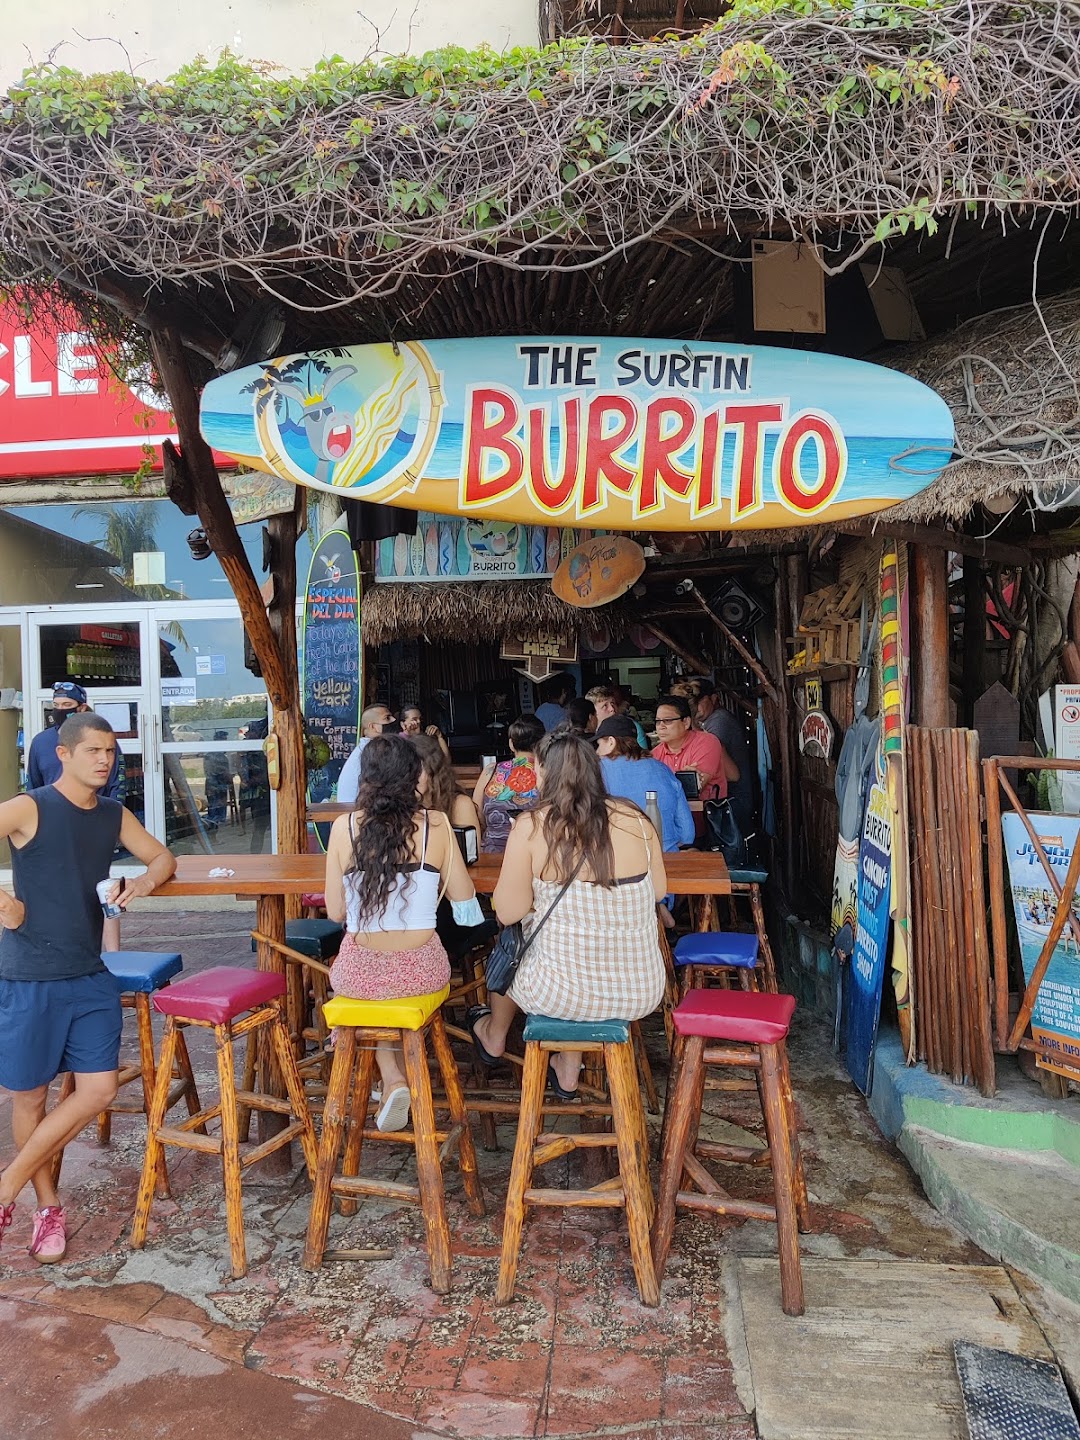 The Surfin Burrito